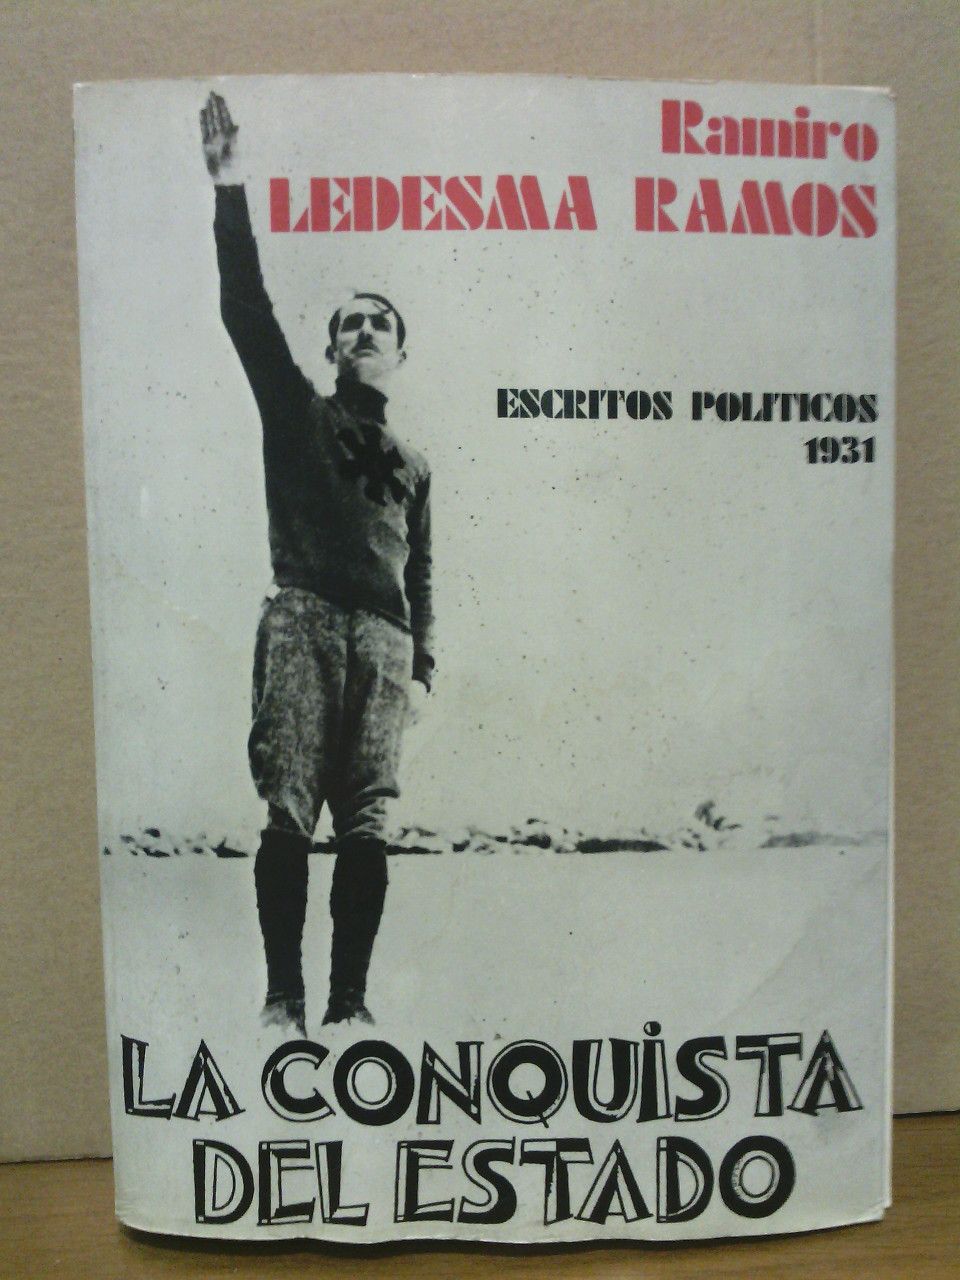 LEDESMA RAMOS, Ramiro - Escritos polticos: La conquista del Estado (1931)